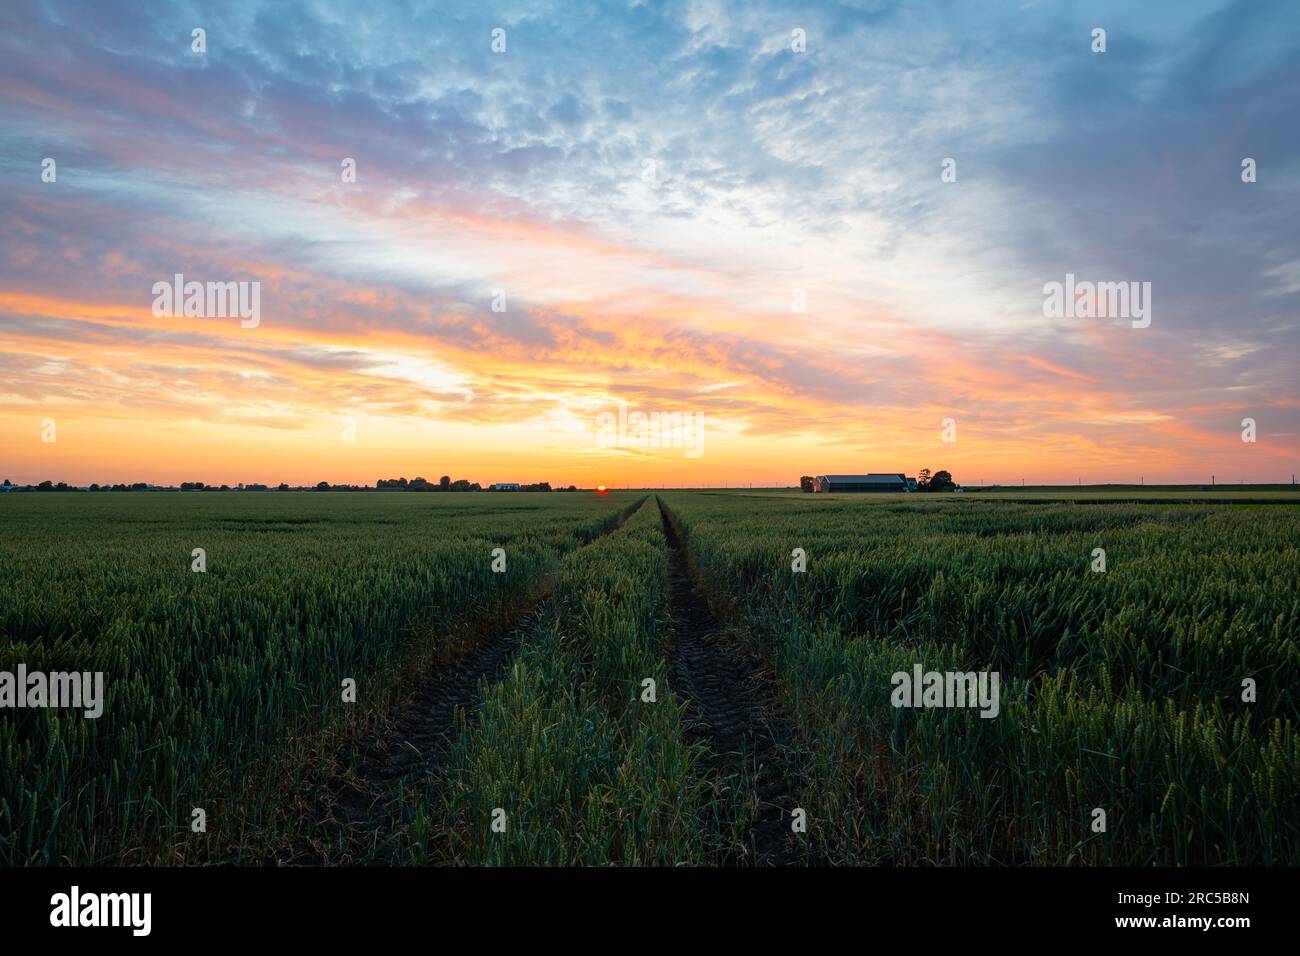 Vue idyllique d'un coucher de soleil coloré sur un champ de blé Banque D'Images